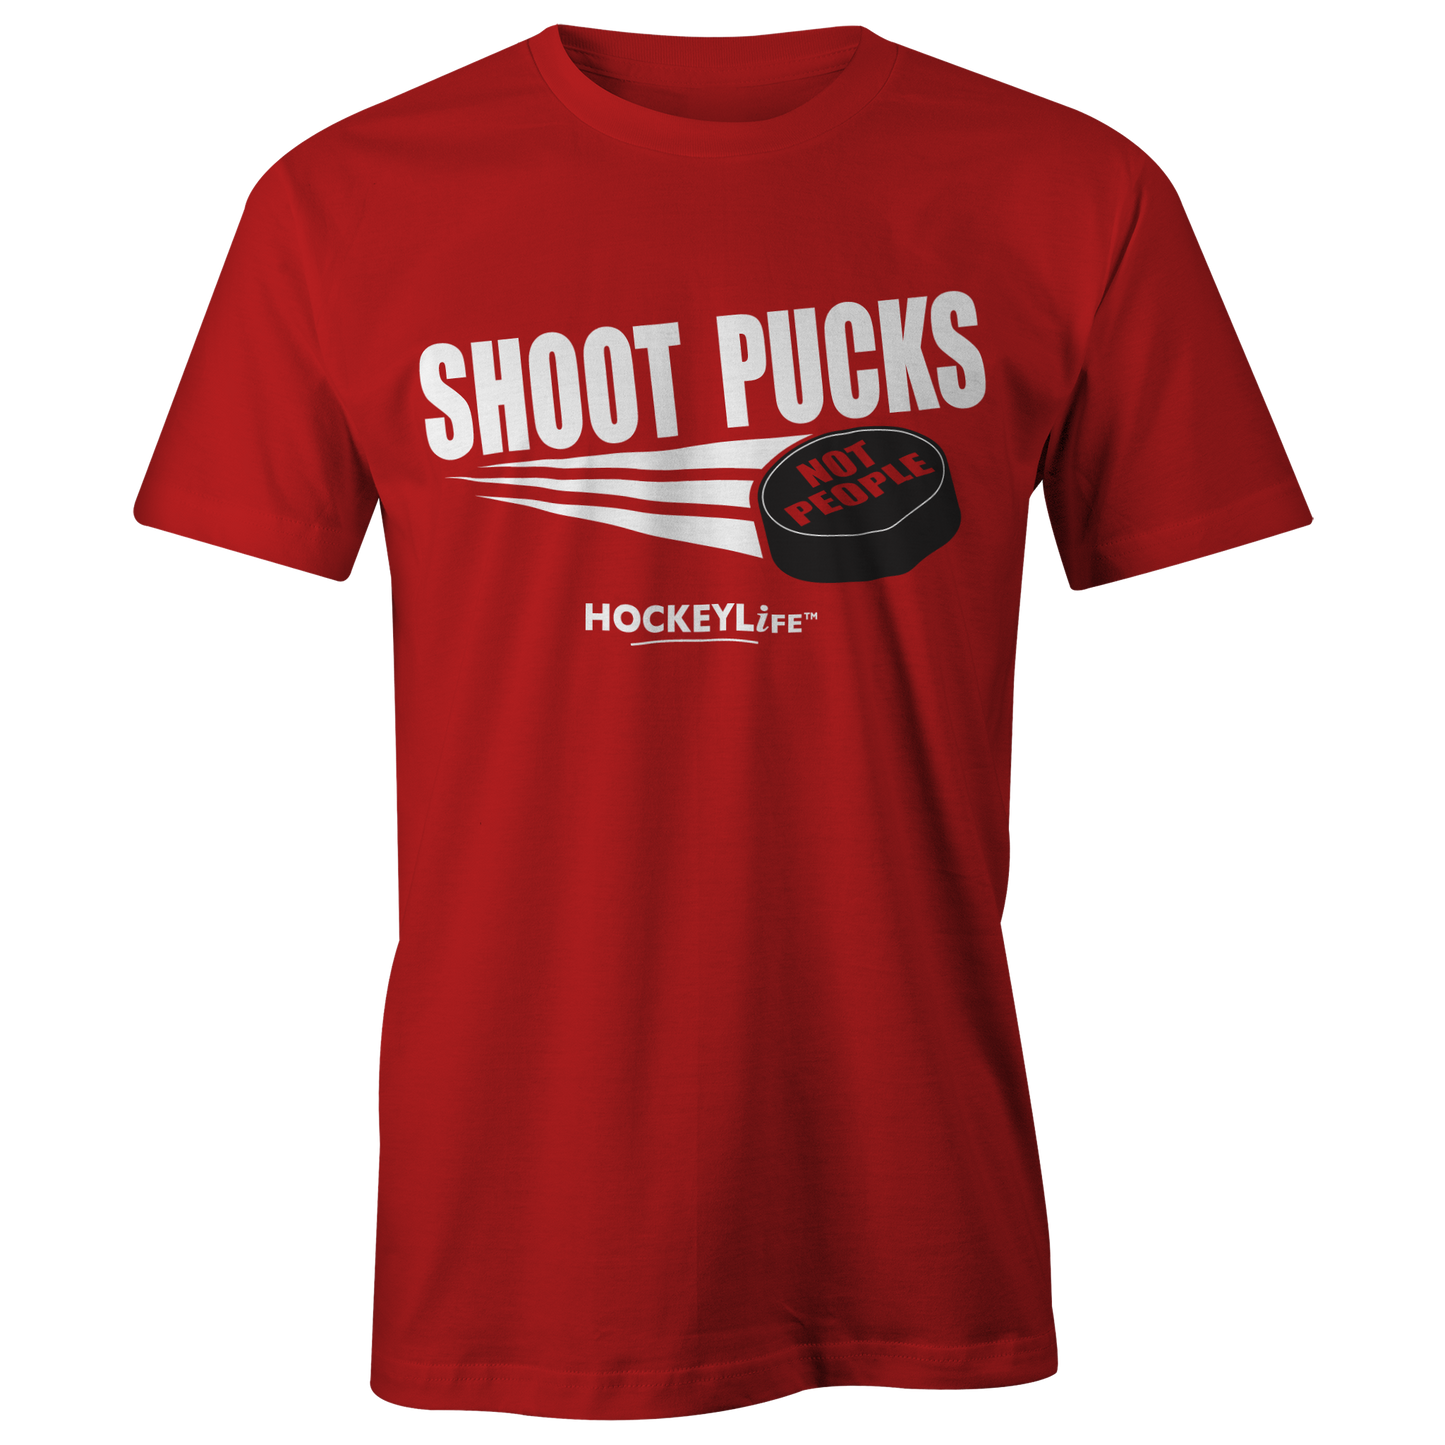 Shoot Pucks Not People Tee Shirt (Red)